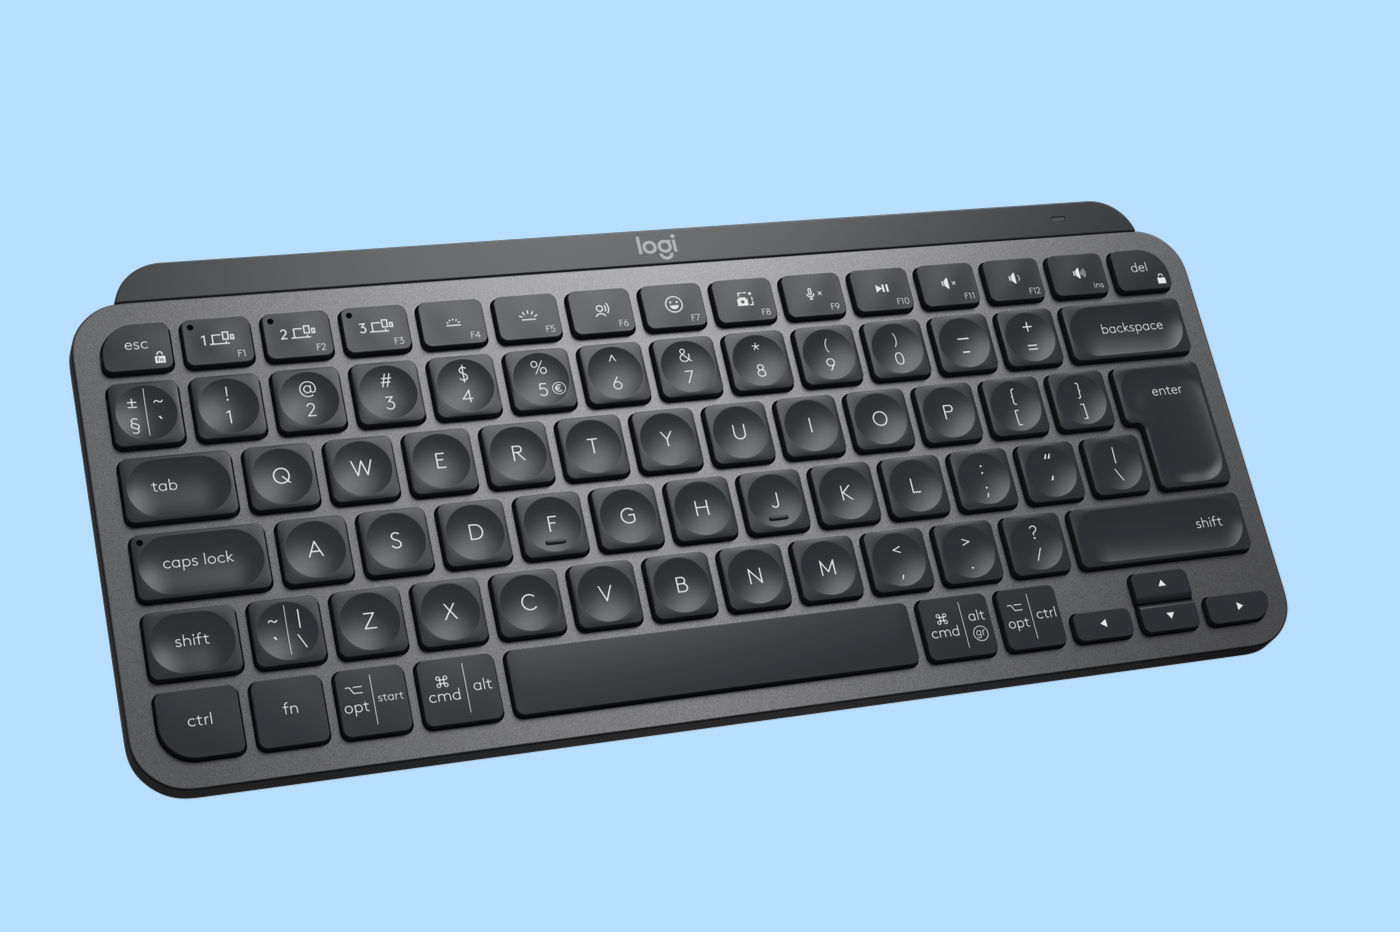 Mini clavier sans fil universel sans fil Bluetooth - Petit clavier